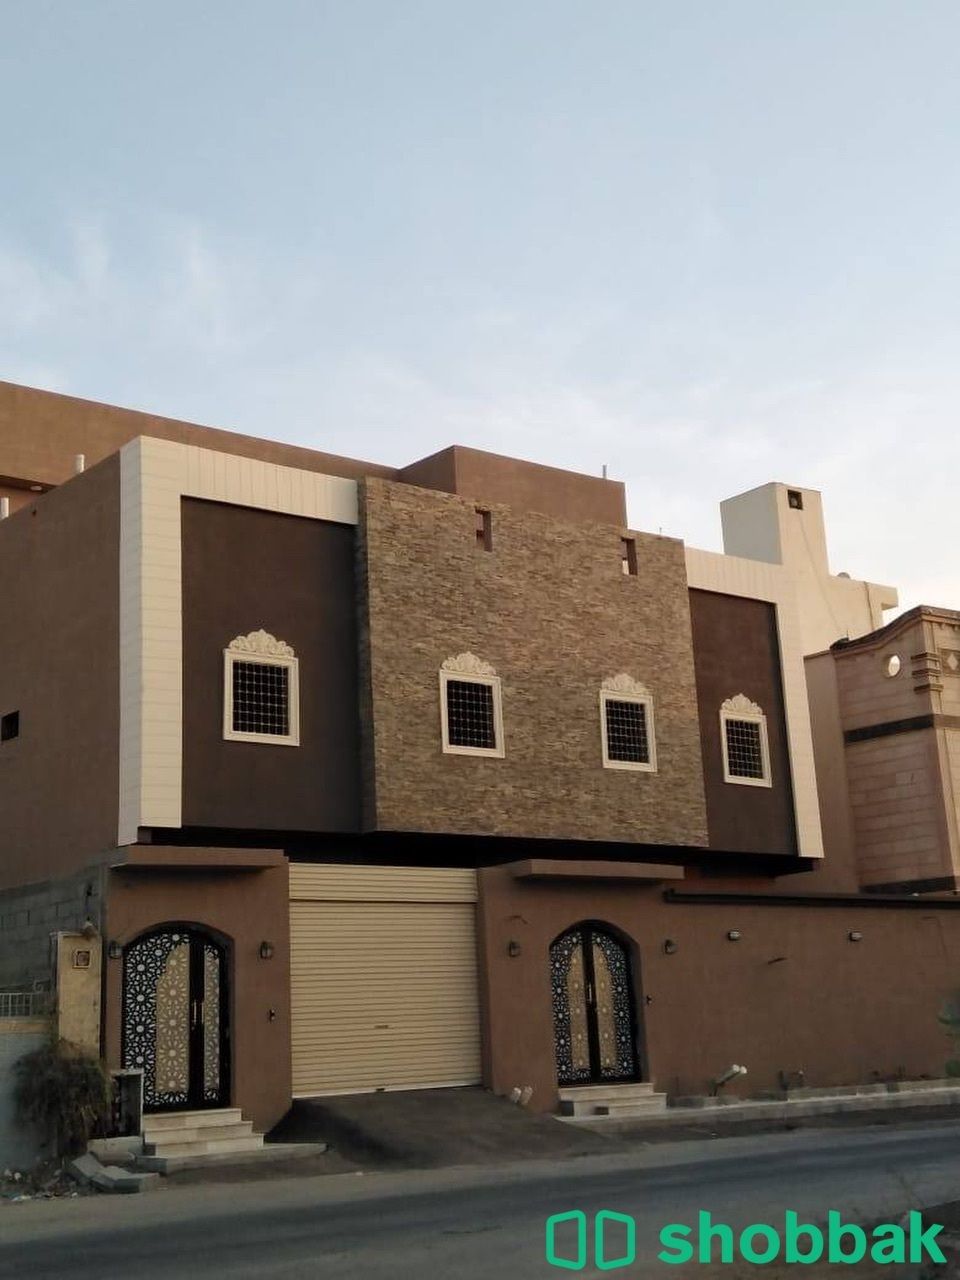 شقة من ثلاث غرف للايحار بحي الرياض Shobbak Saudi Arabia